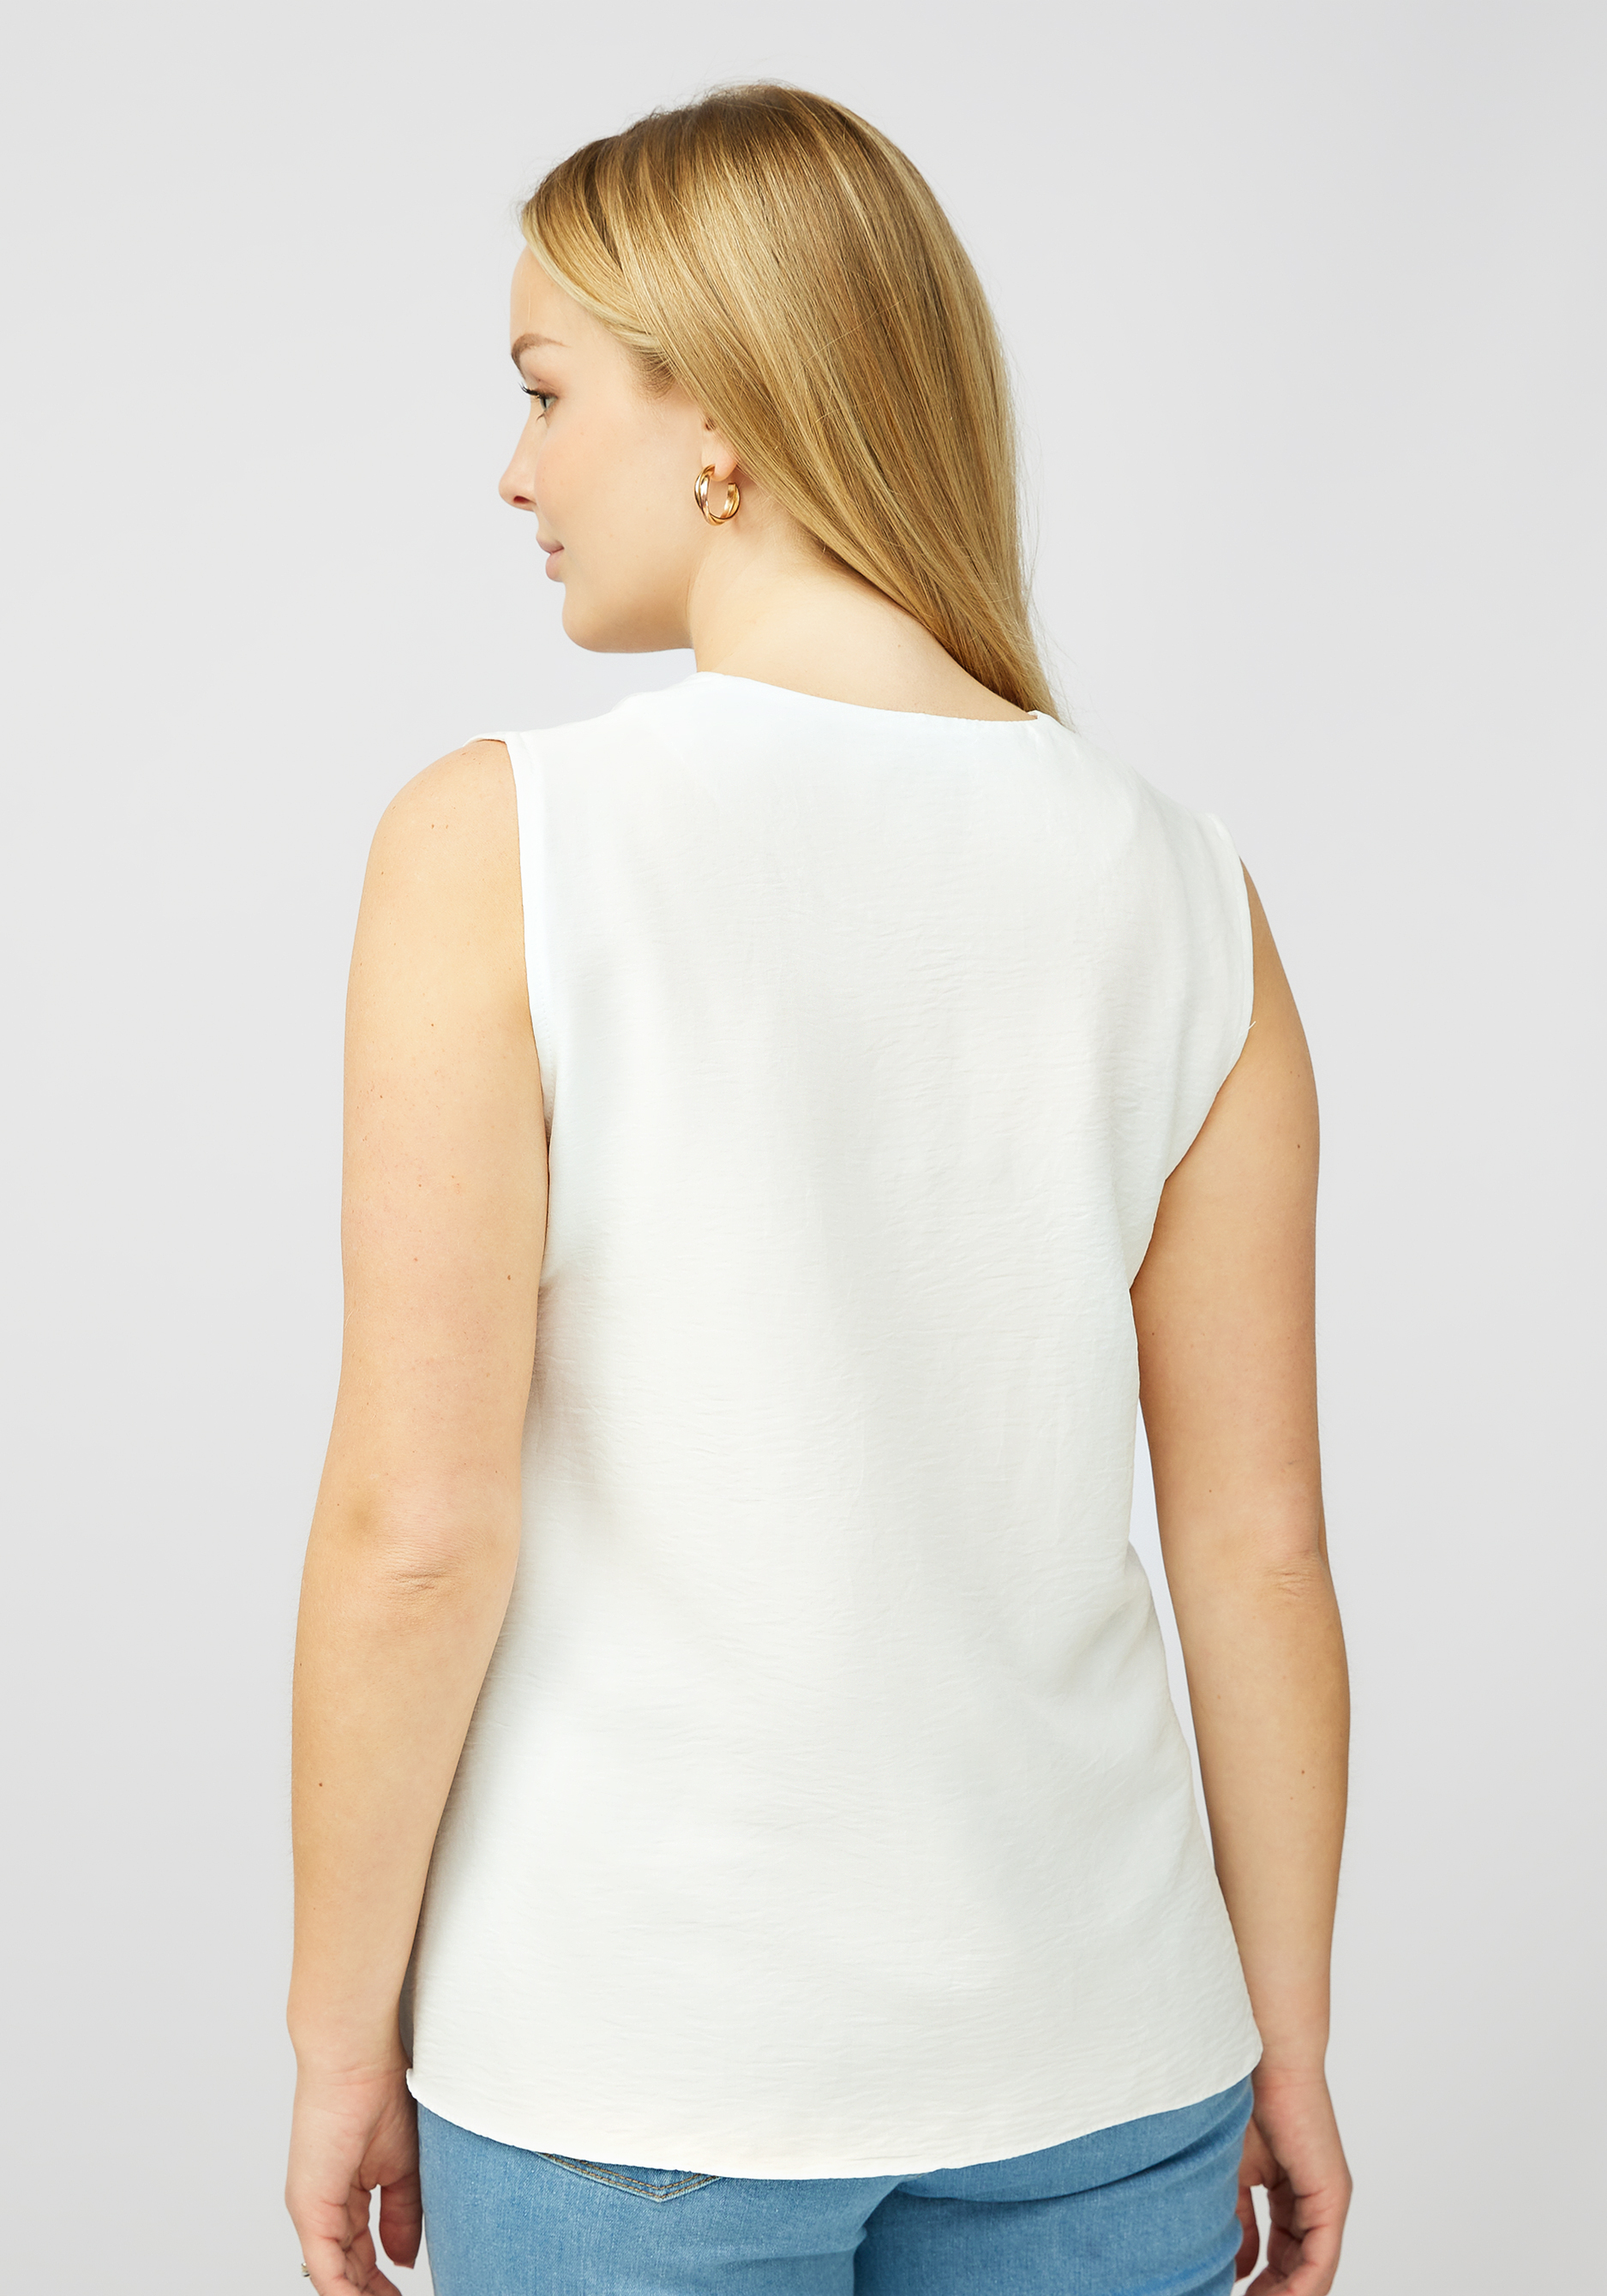 Блуза без рукавов с V образным вырезом VeraVo, размер 52, цвет белый - фото 4